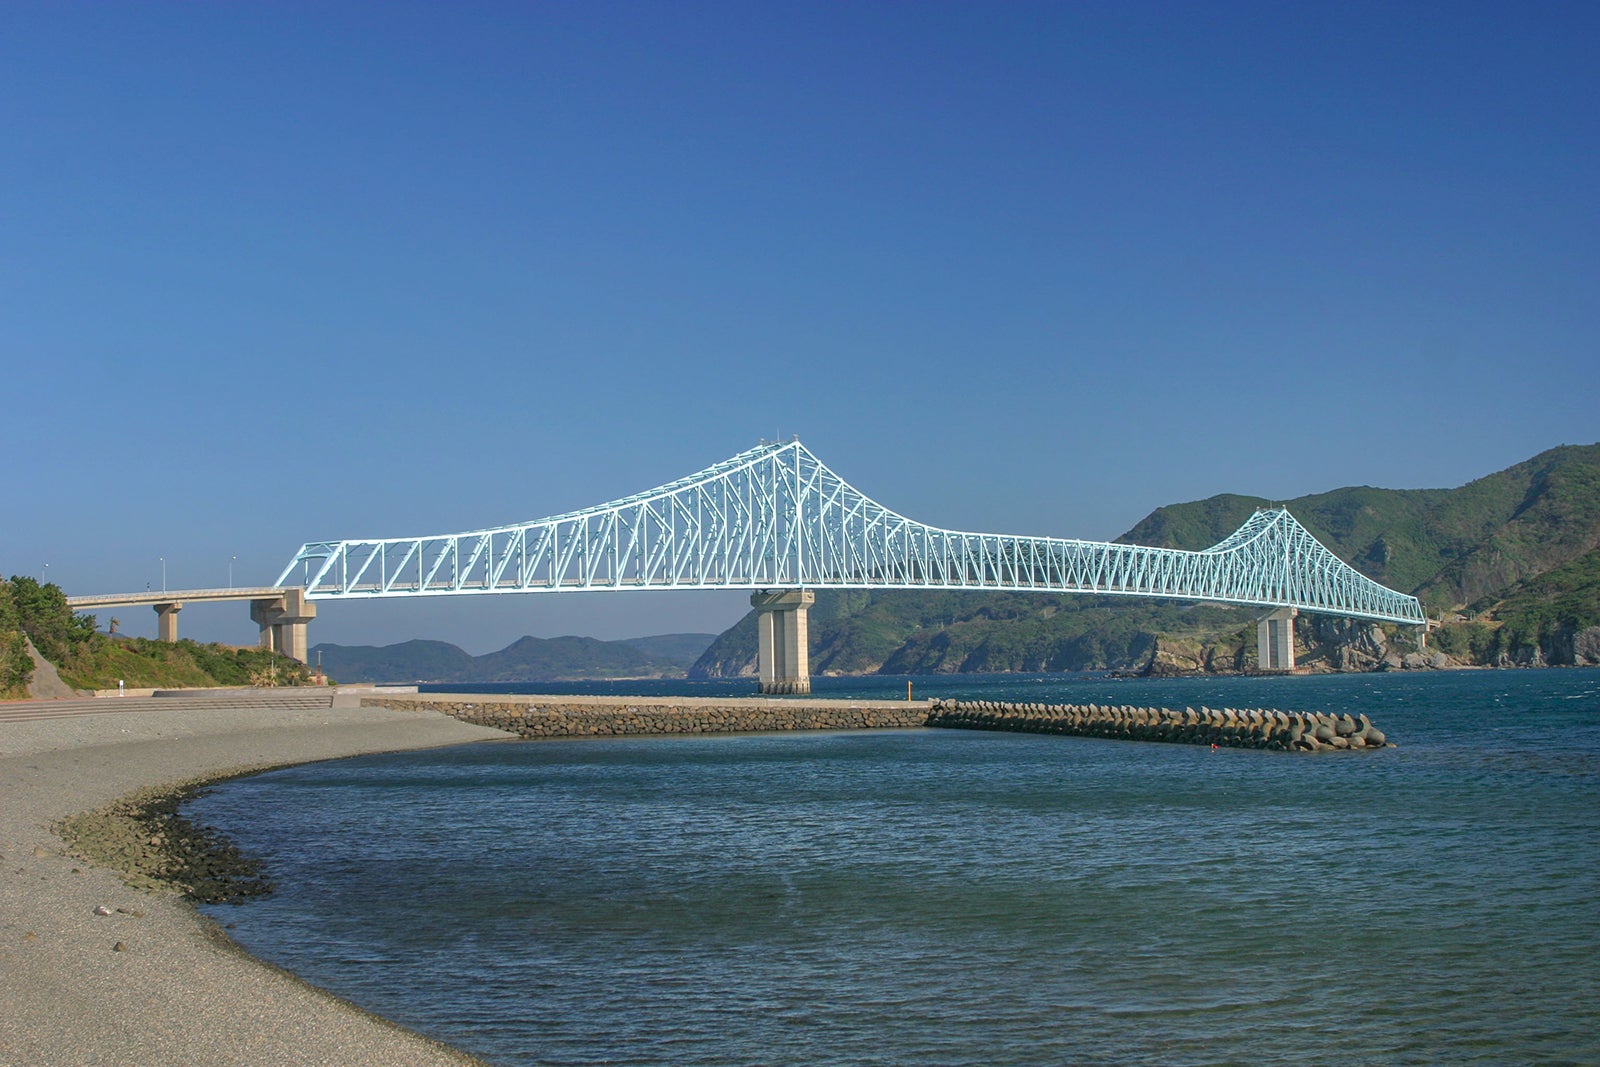 ライトブルーのトラスが海と空に調和する生月大橋。完成当初は有料だったが、2010年4月に無料化された。